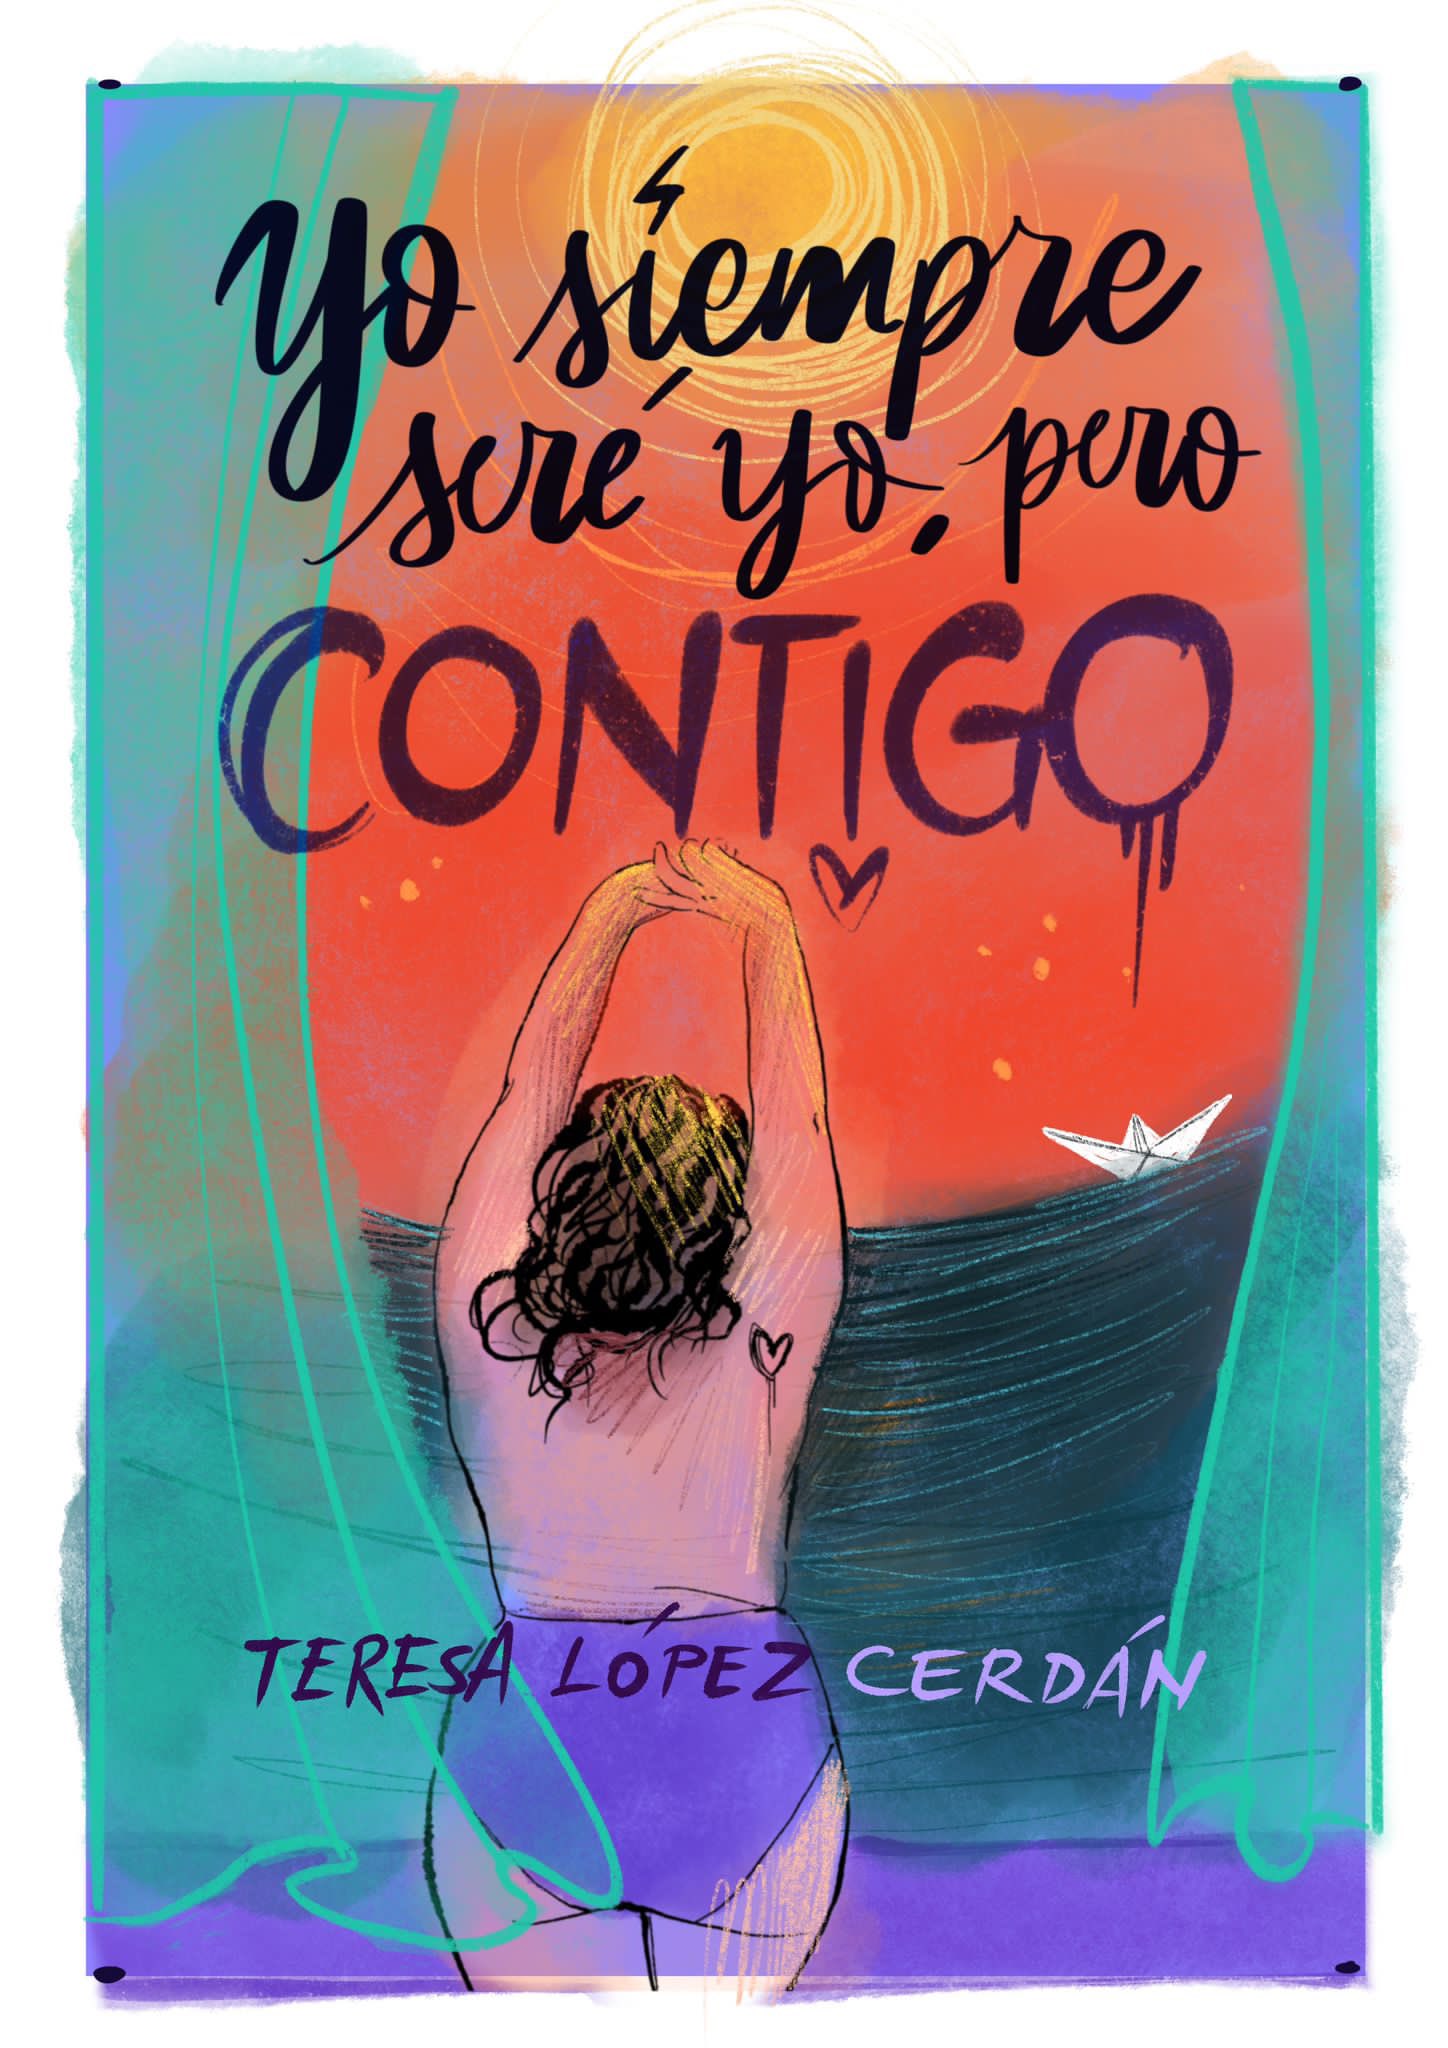 Yo siempre seré yo, a pesar de ti - Teresa López Cerdán